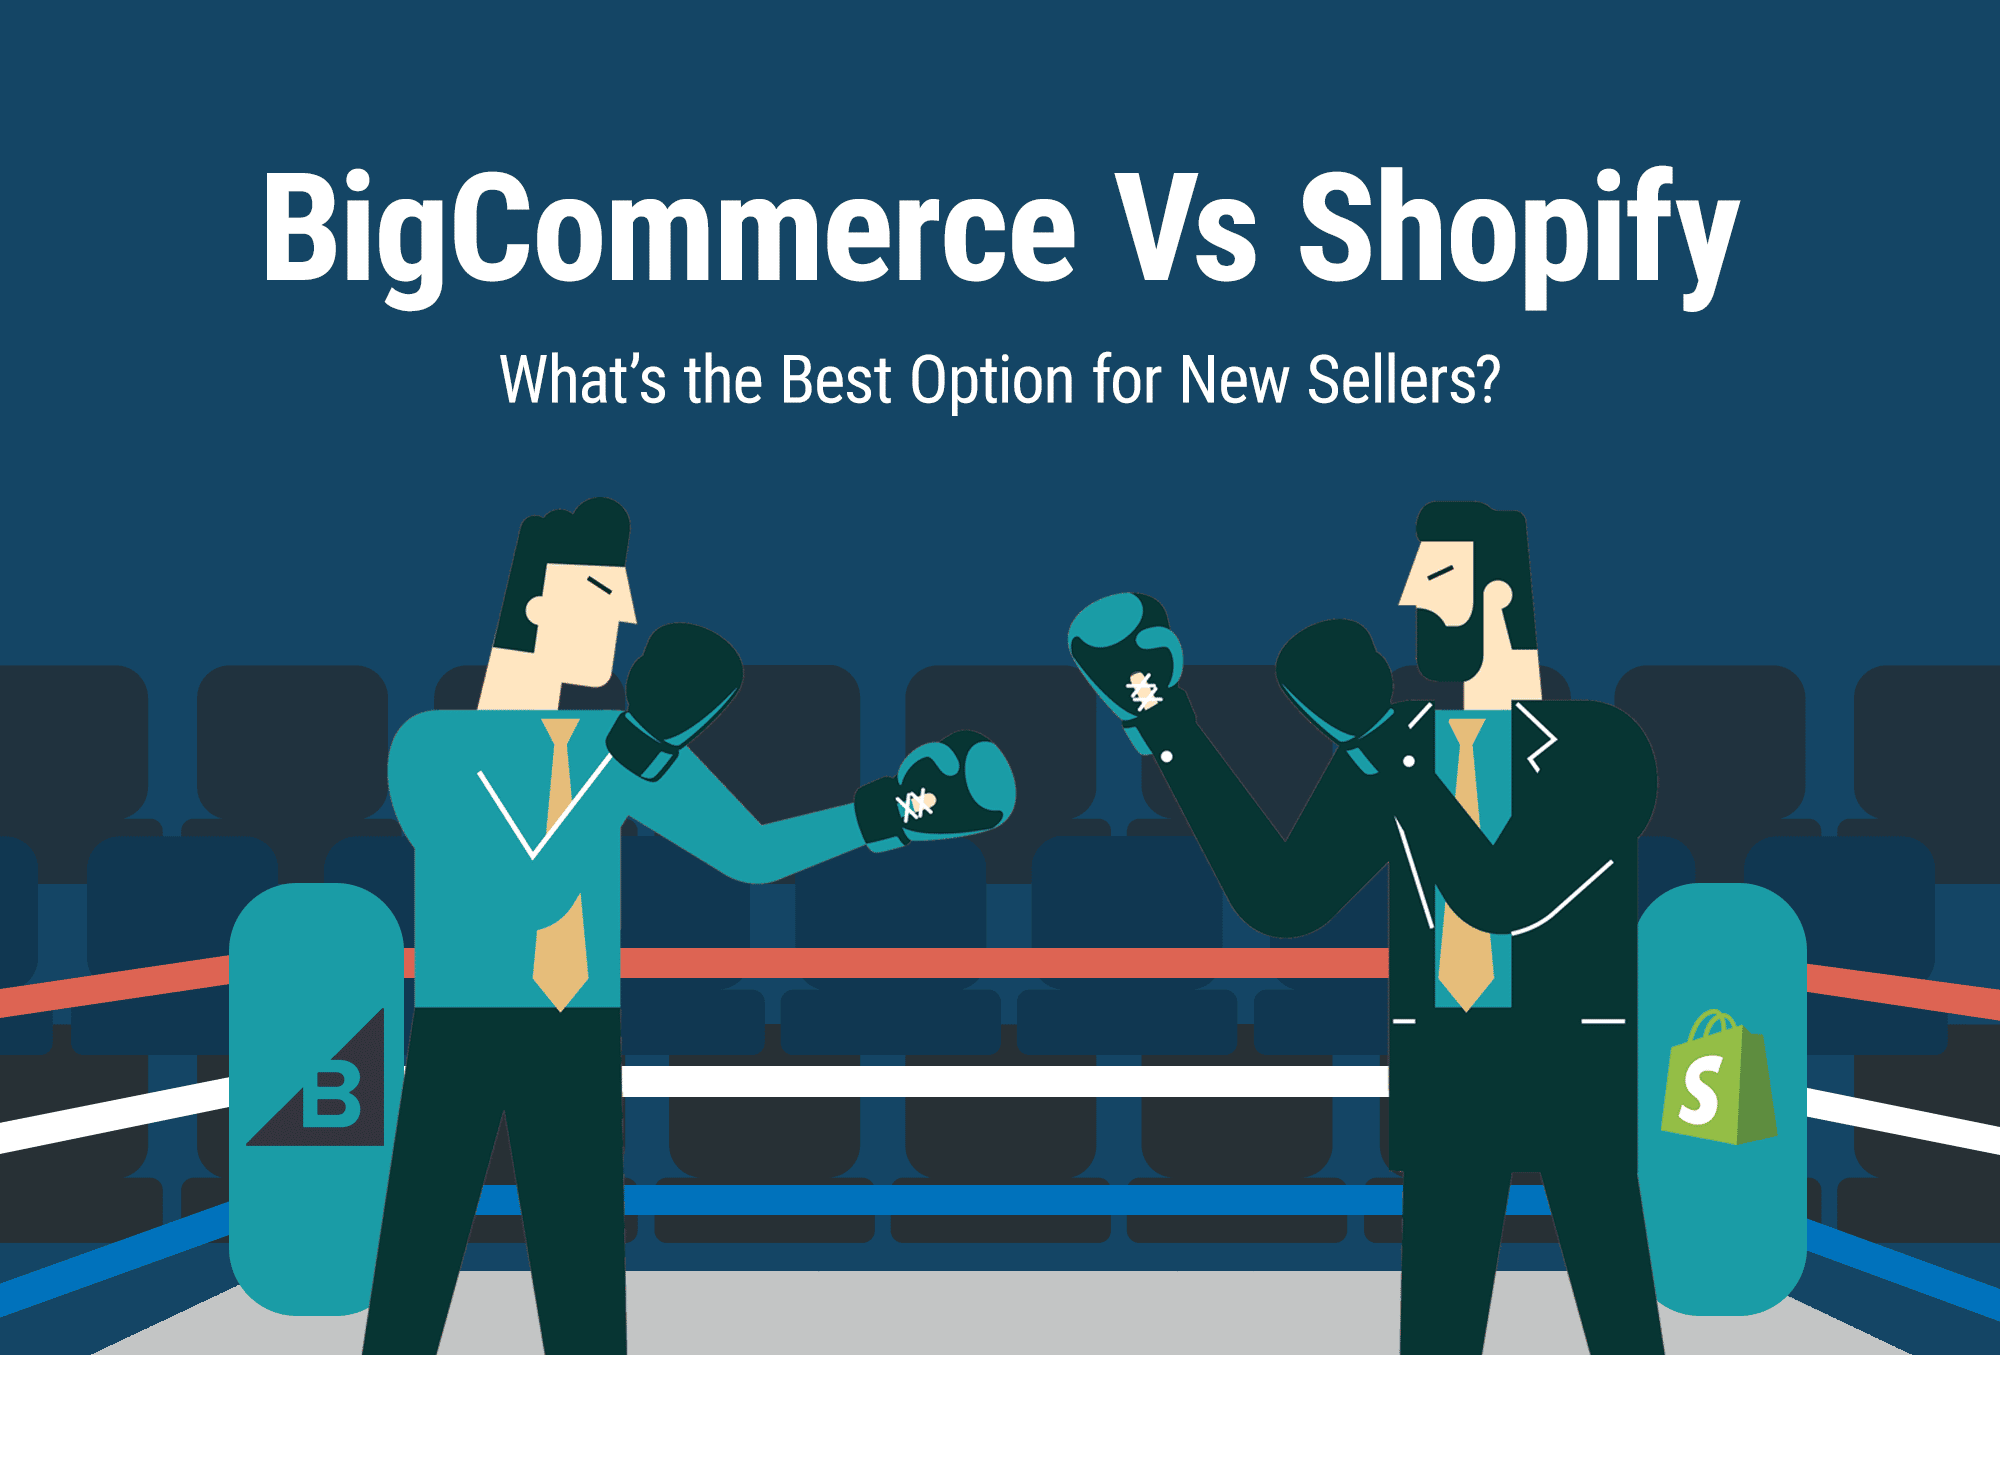 Shopify vs. Bigcommerce